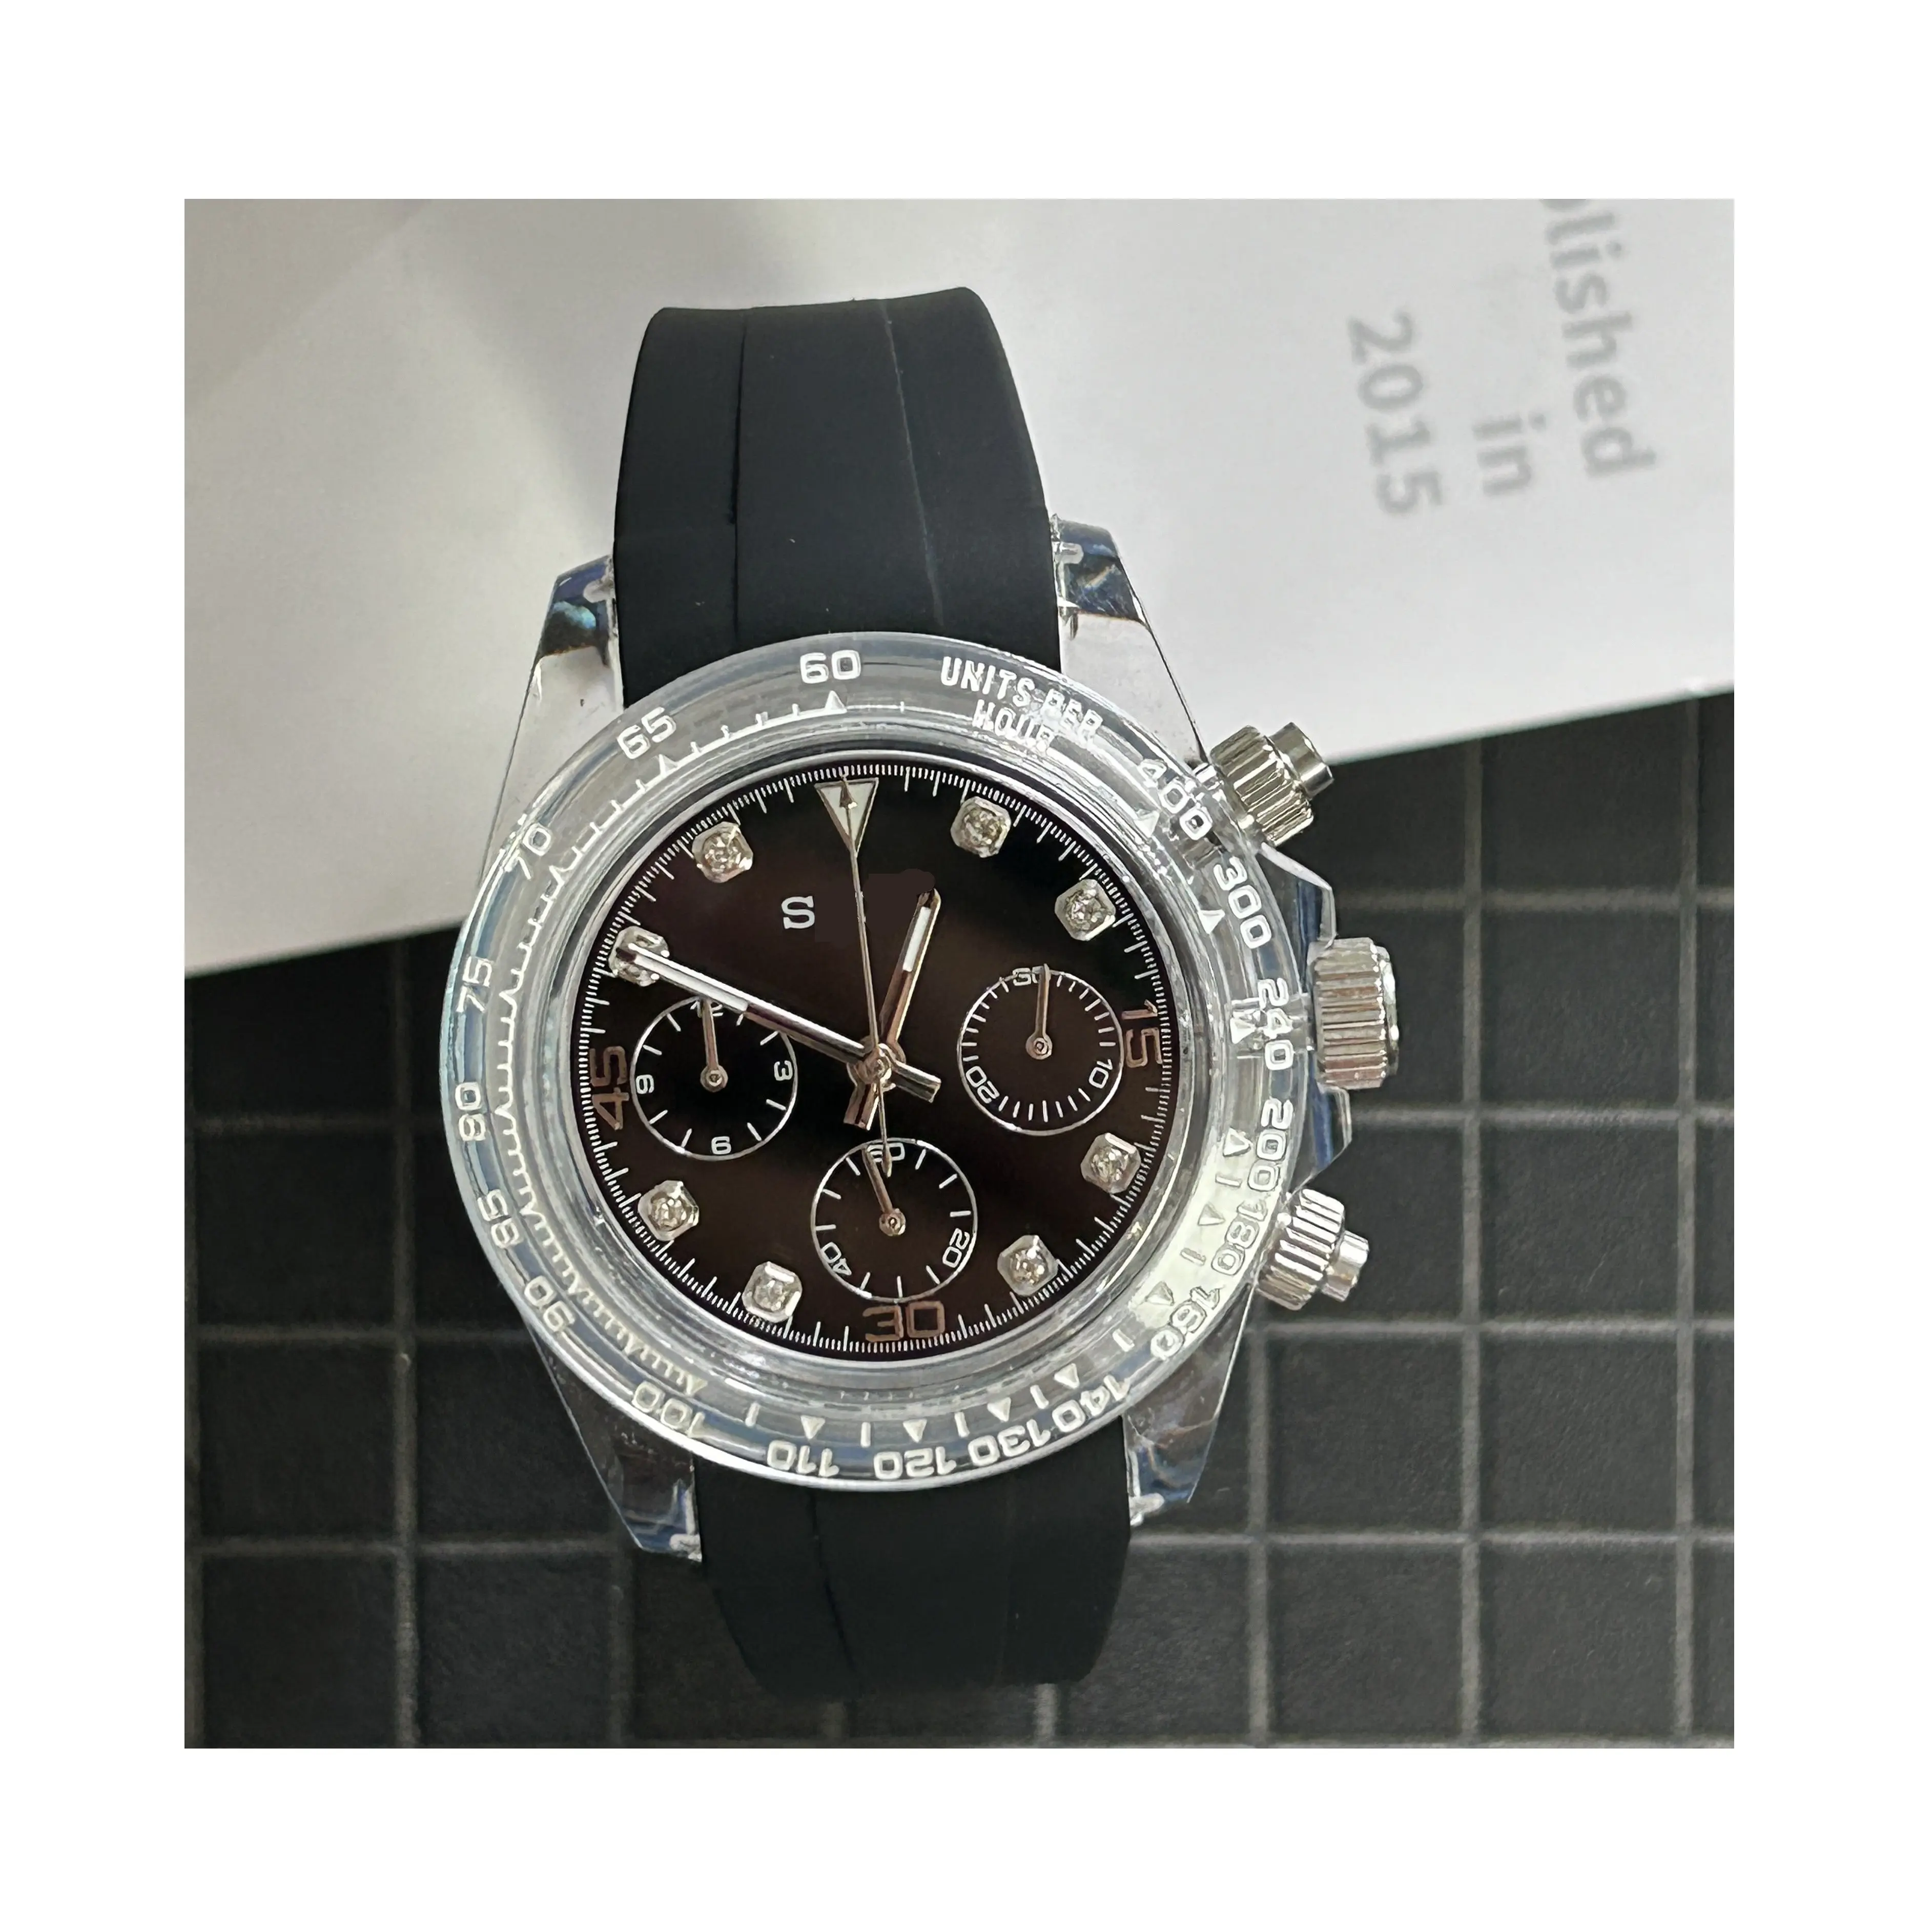 Schlussverkauf neue verbesserte Uhr Seiko Quarzwerk Edelstahluhr mit Saphirglas und japanisches VK63 Uhrwerk